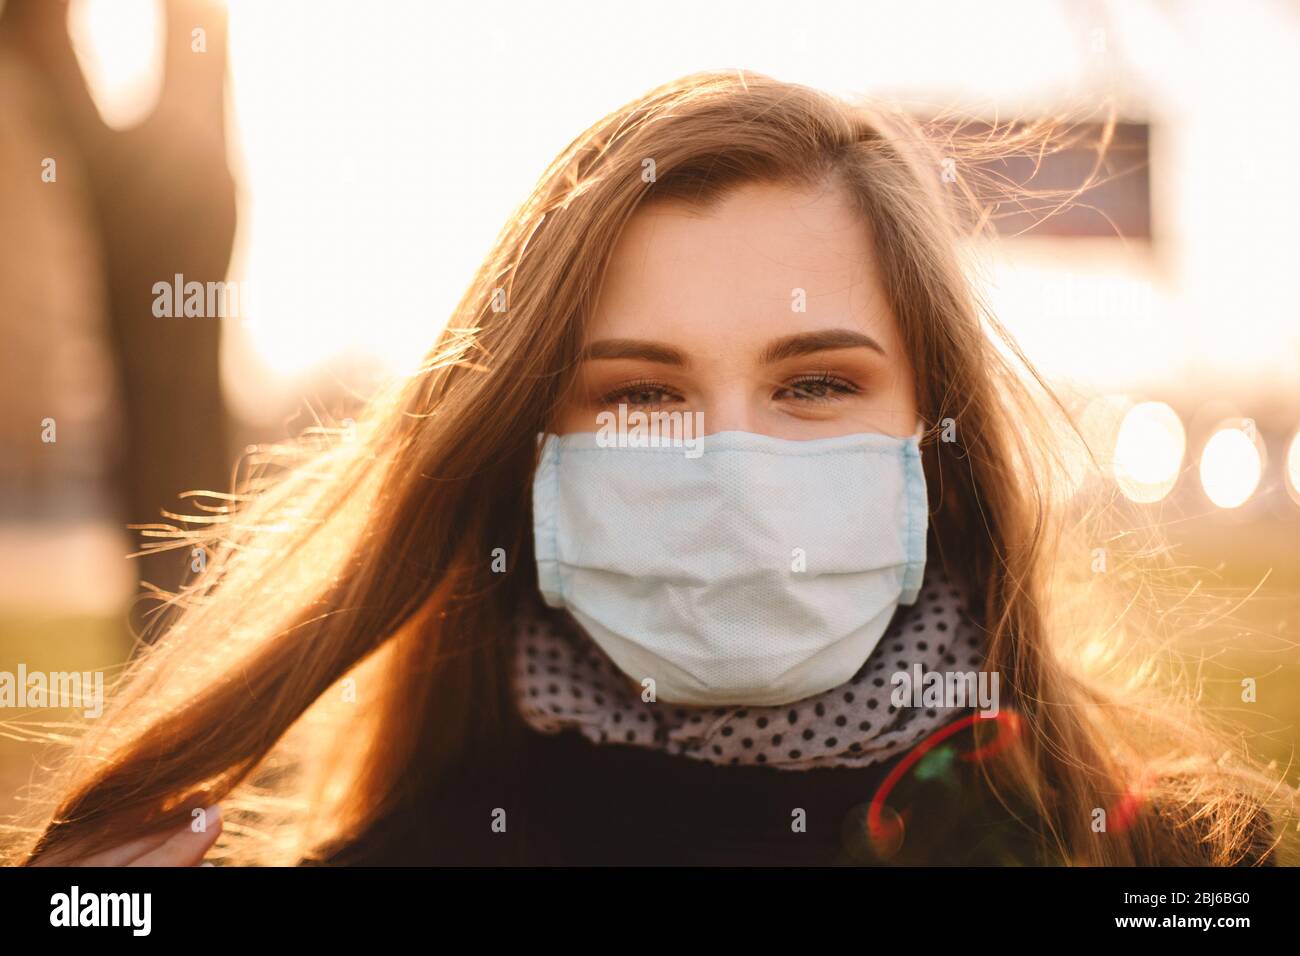 Portrait de heureuse jeune femme portant un masque médical protecteur face debout en ville au coucher du soleil Banque D'Images